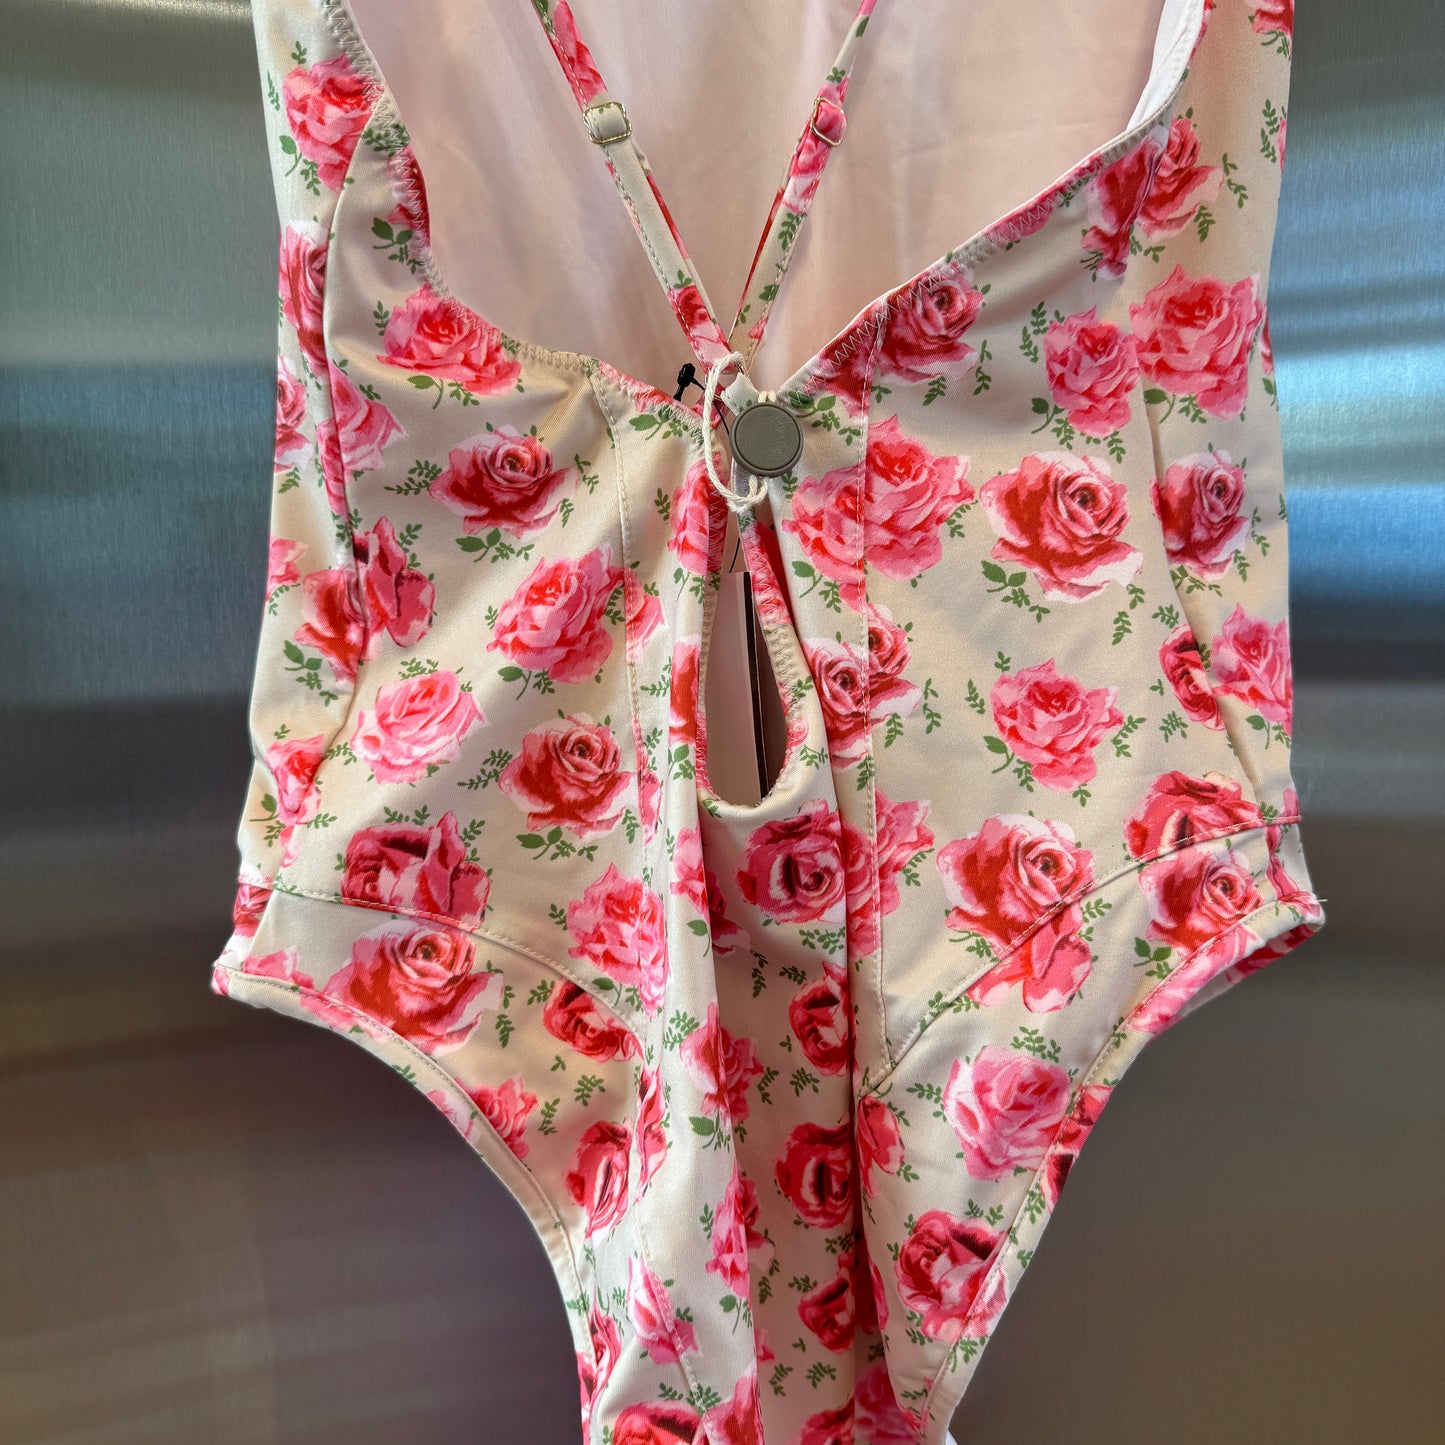 LoveShackFancy Shailee One Piece Swimsuit Bathing suit Rose floral swimwear